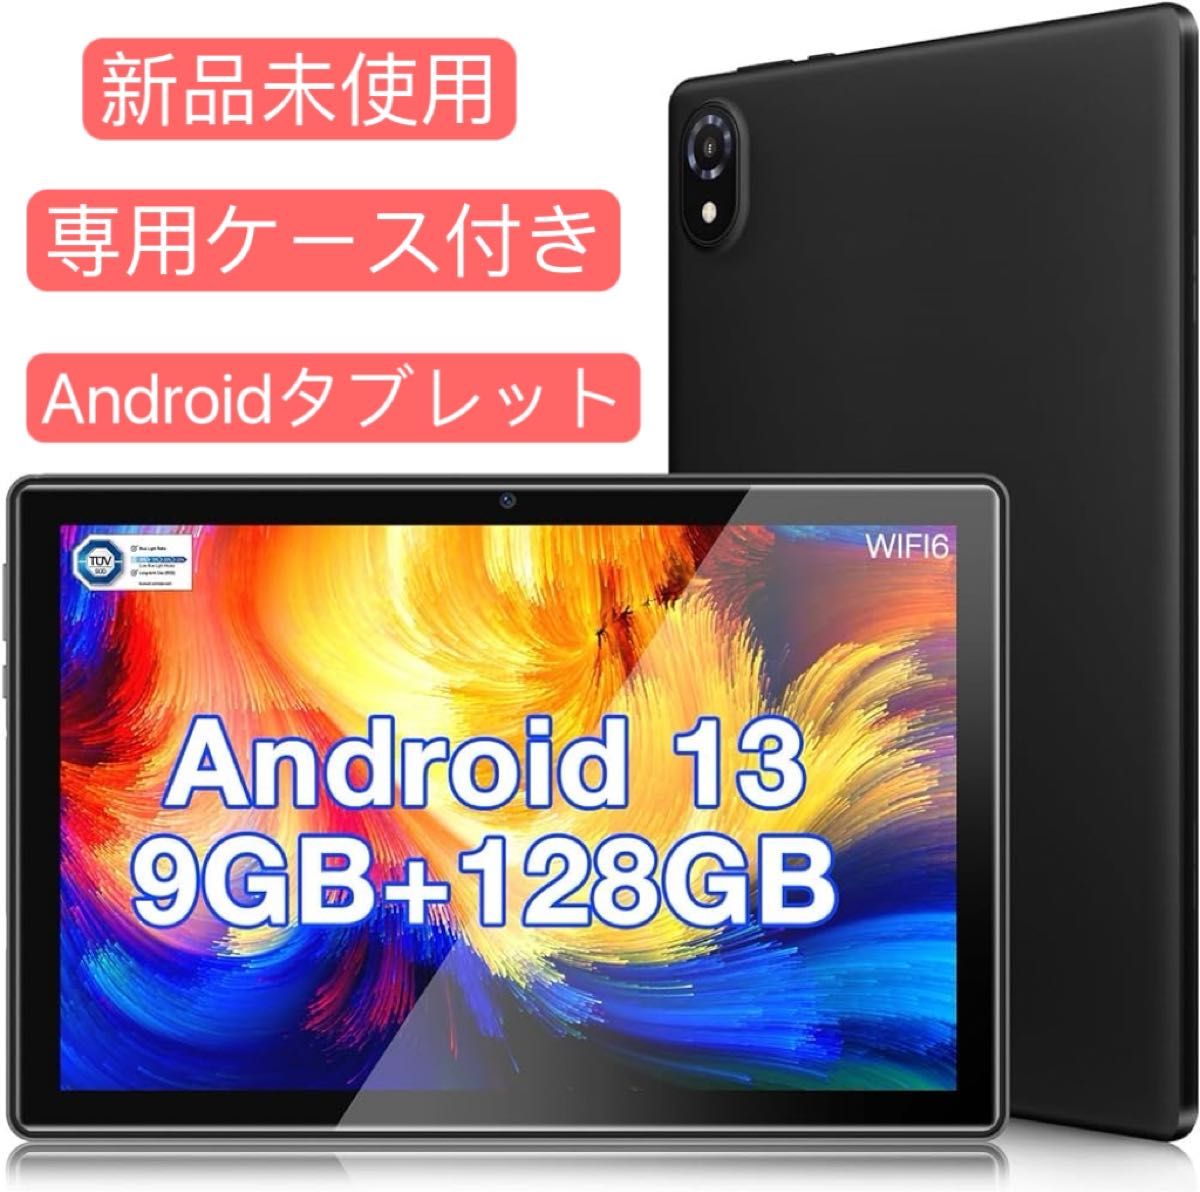 Android 13 タブレット 10インチ wi-fiモデル 9GB(4+5拡張)+ 128GB+1TB拡張可能　専用ケース付属